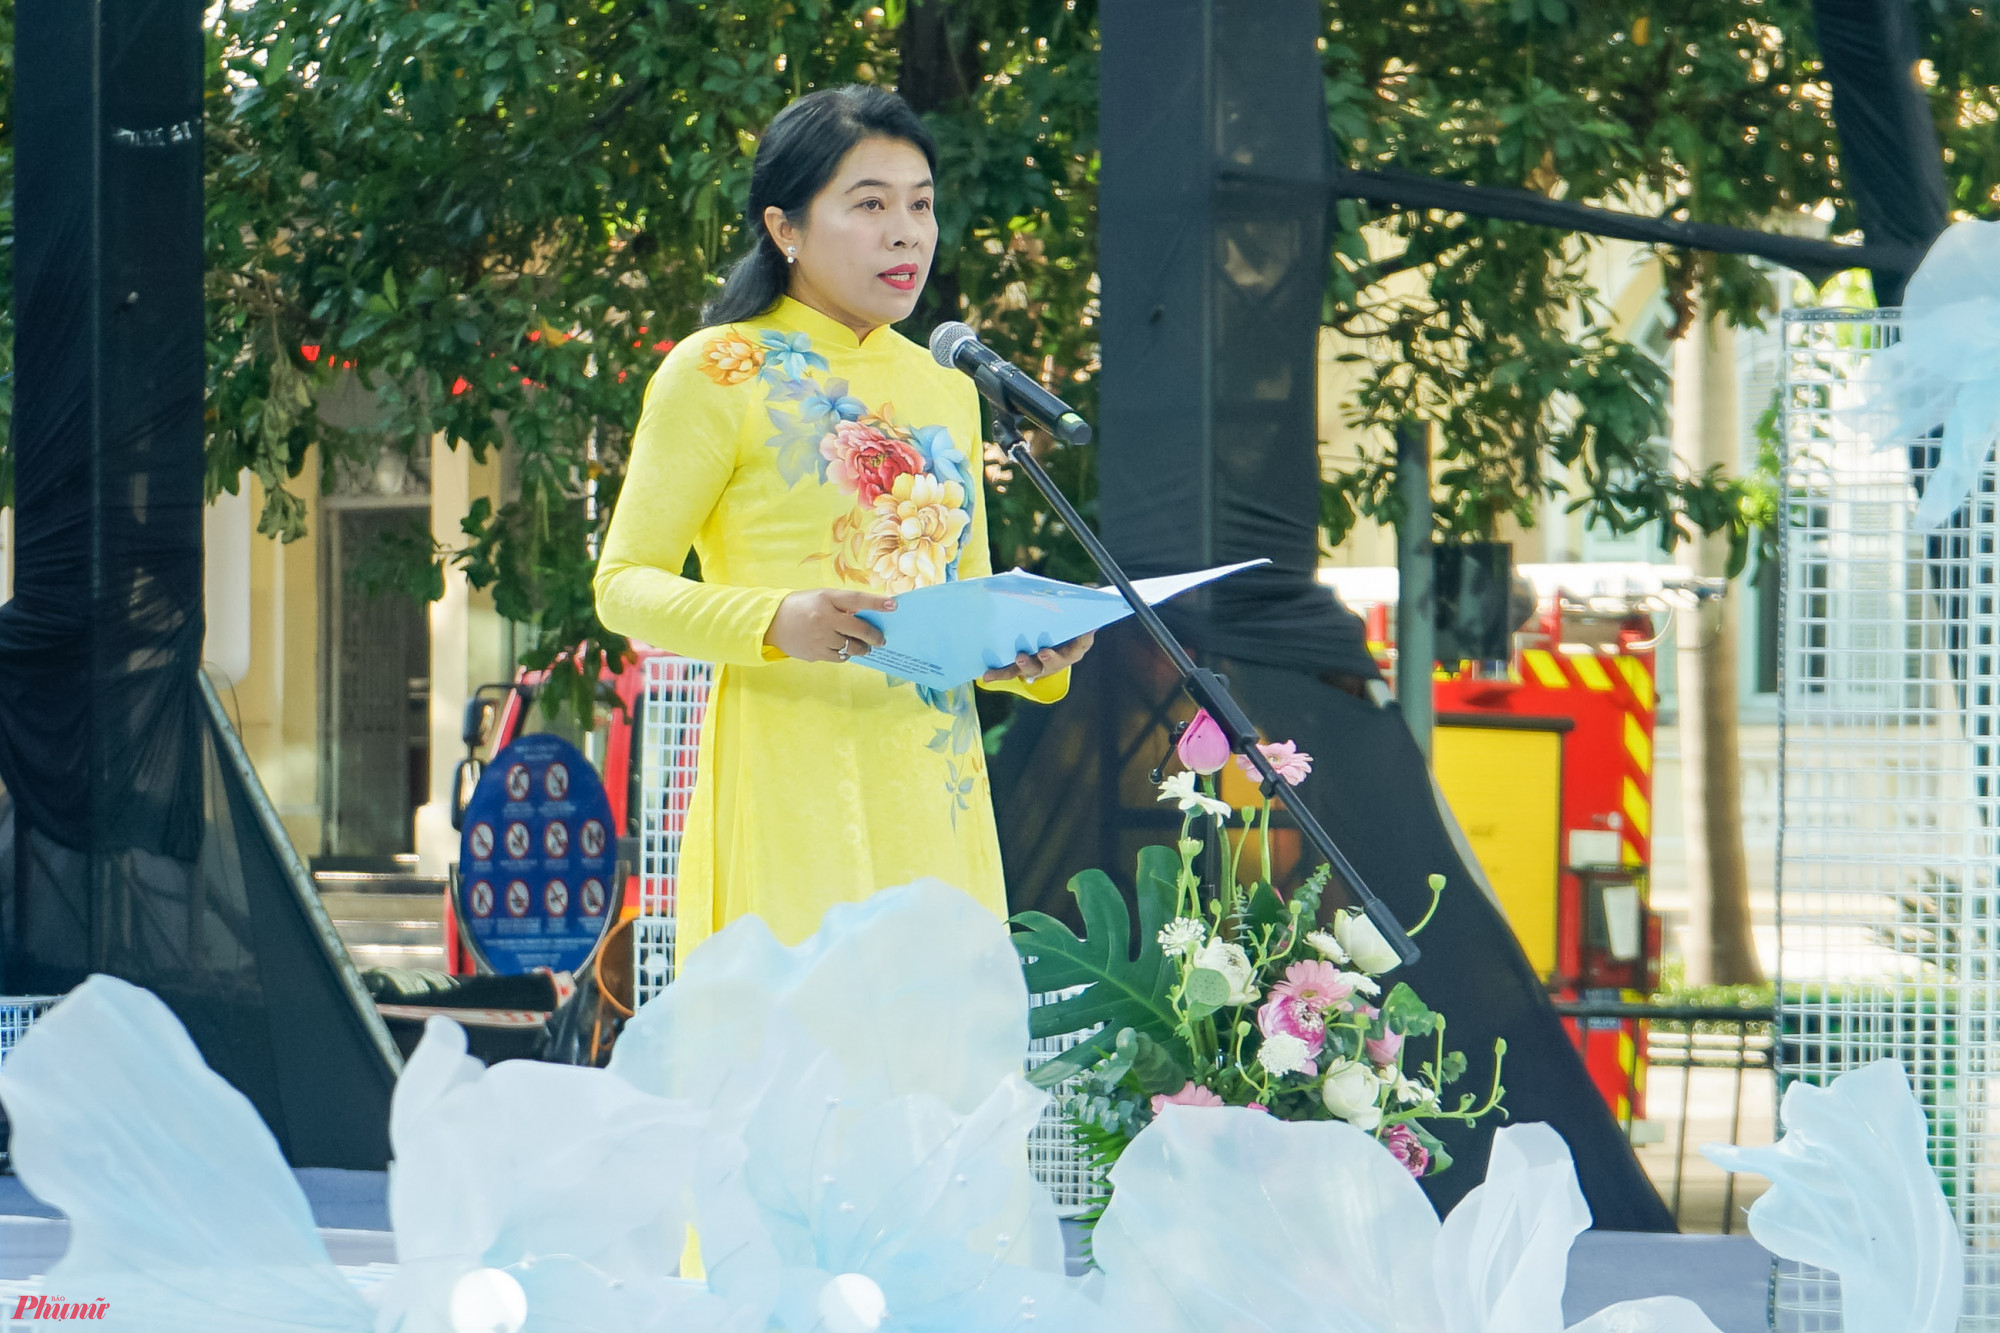 Phát biểu tại chương trình, bà Nguyễn Trần Phượng Trân, Chủ tịch Hội Liên hiệp Phụ nữ TPHCM cho biết: Chương trình đồng diễn không chỉ tôn vinh giá trị truyền thống của tà áo dài mà bên cạnh đó còn tô nét vẻ đẹp dịu dàng của phụ nữ Việt Nam nhân kỷ niệm ngày Quốc tế Phụ nữ 8/3”.